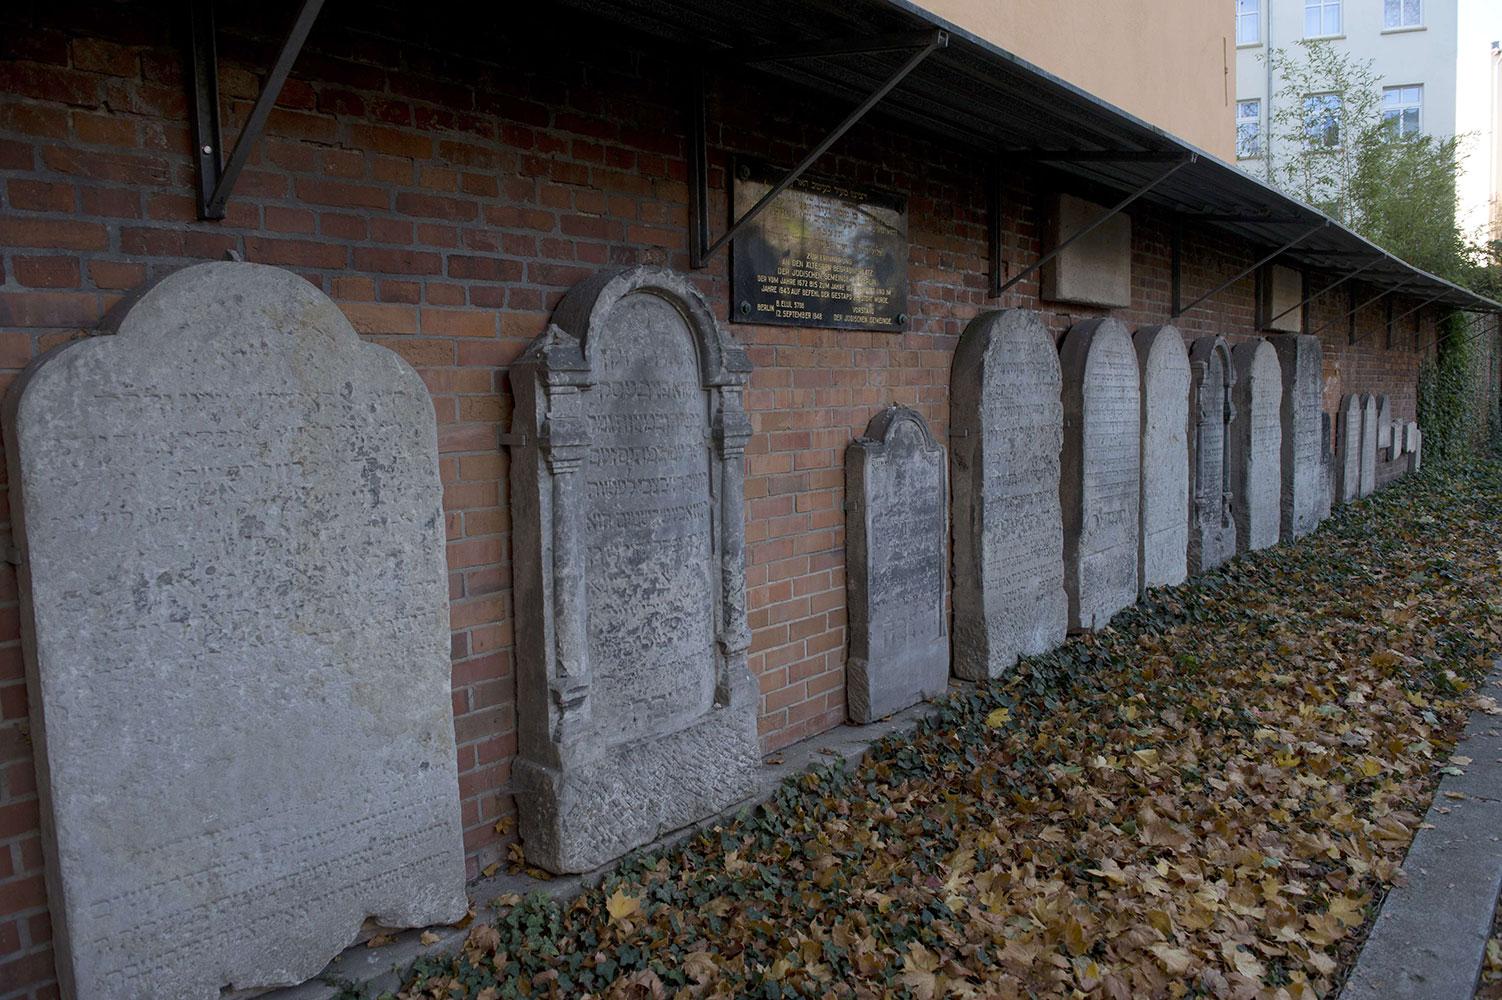 Gestapochefen begravdes i en massgrav på en judisk kyrkogård i centrala Berlin.